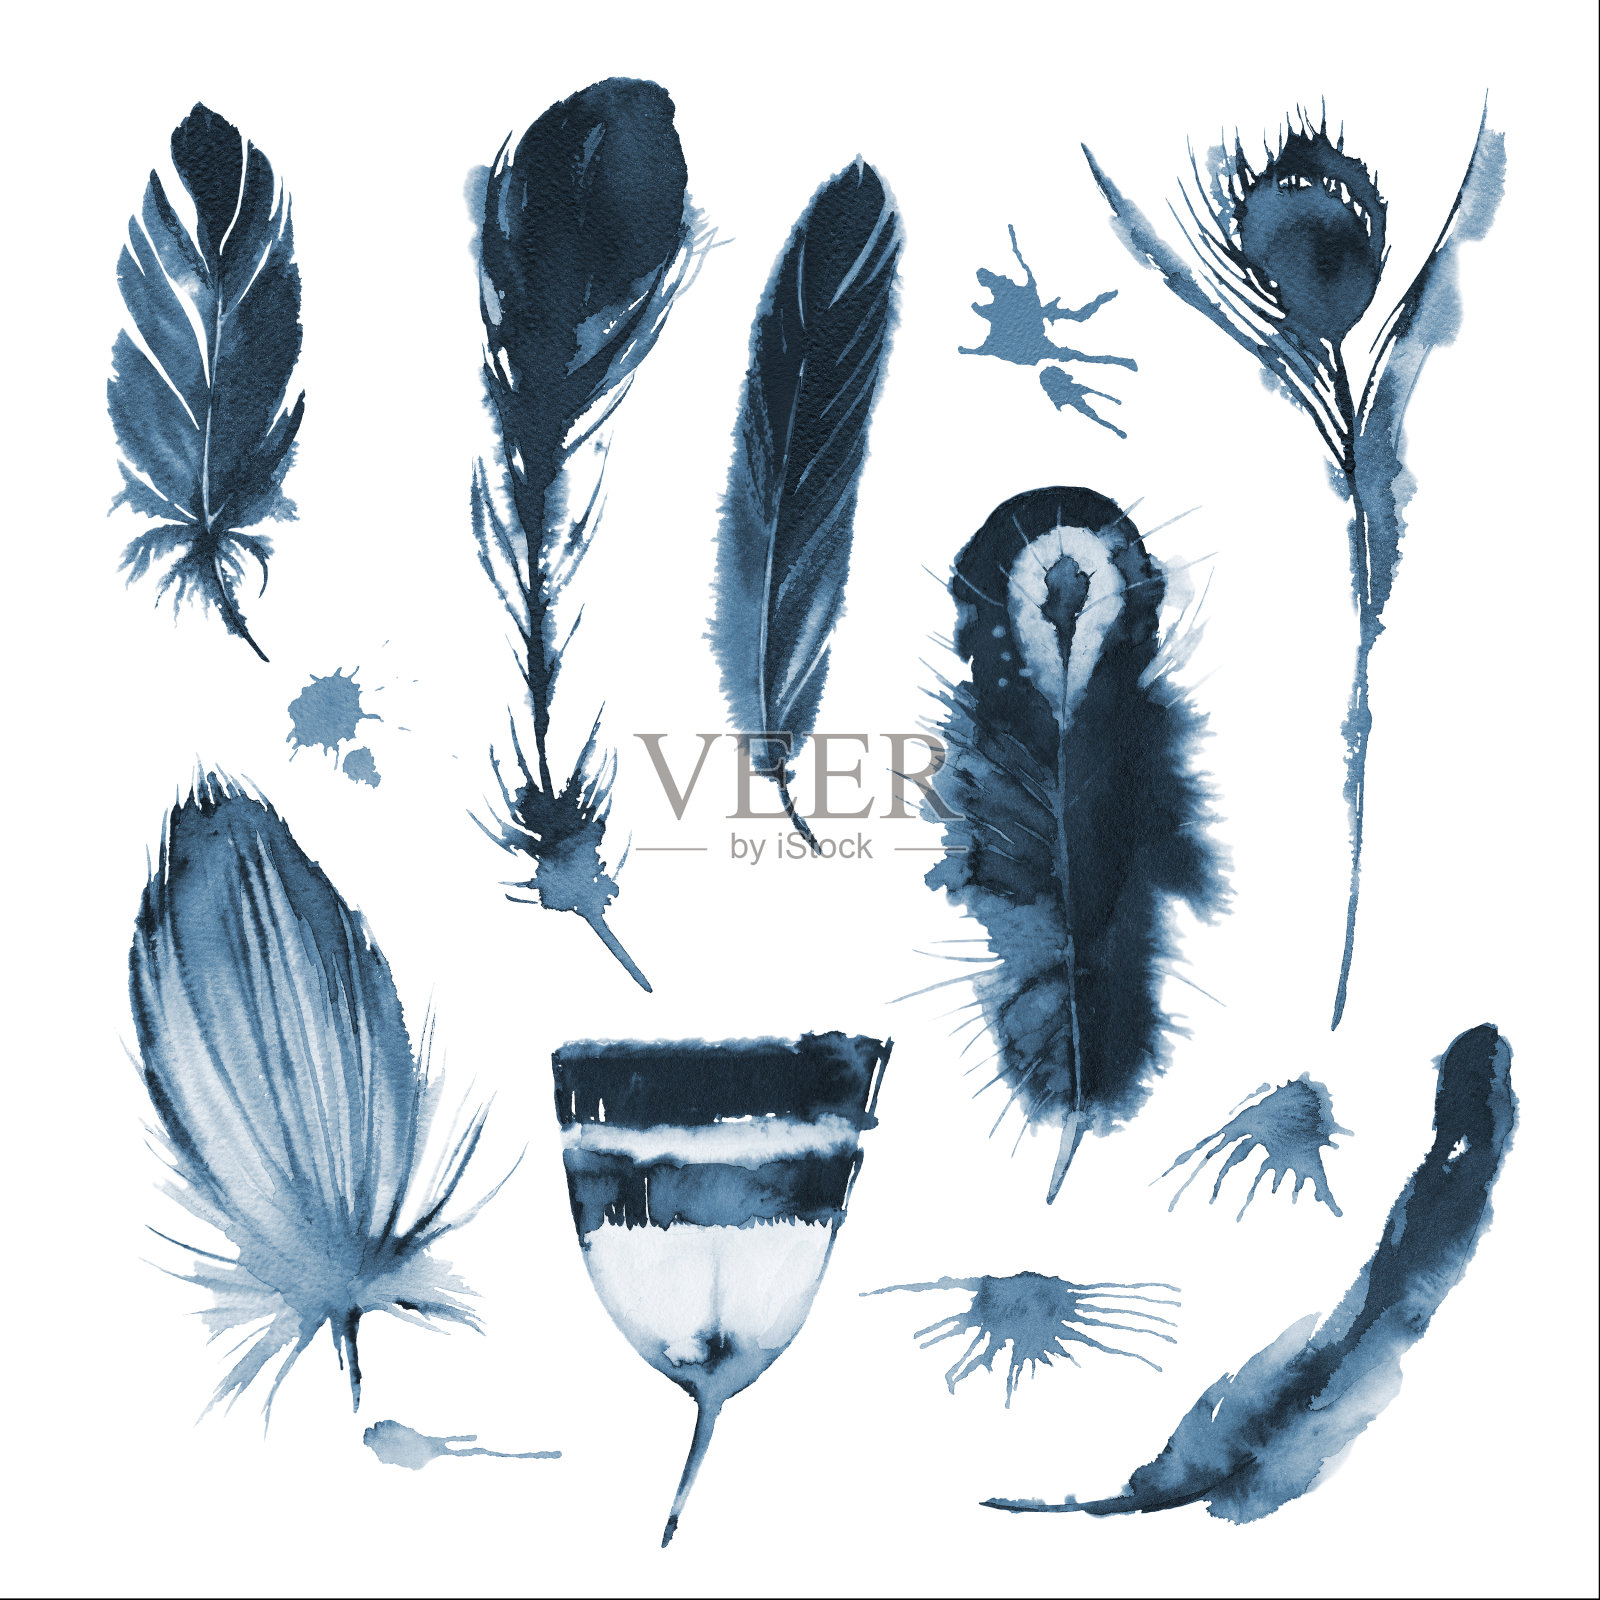 黑白水墨素描的单色图形鸟的羽毛和墨迹。插图。设计元素图片